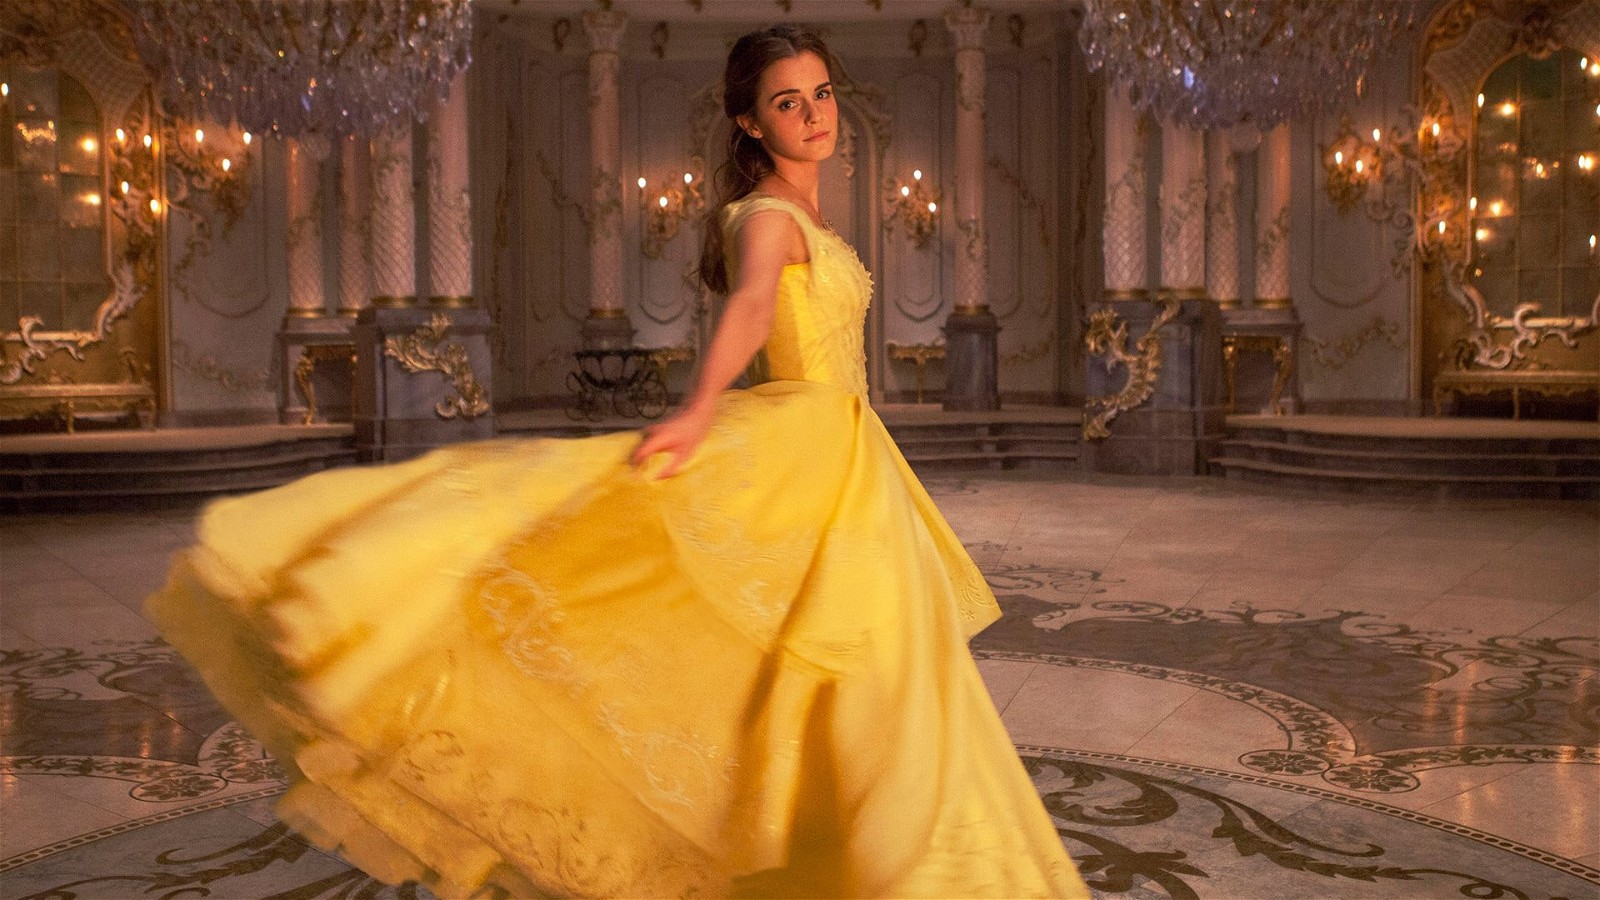 Emma Watson as Belle